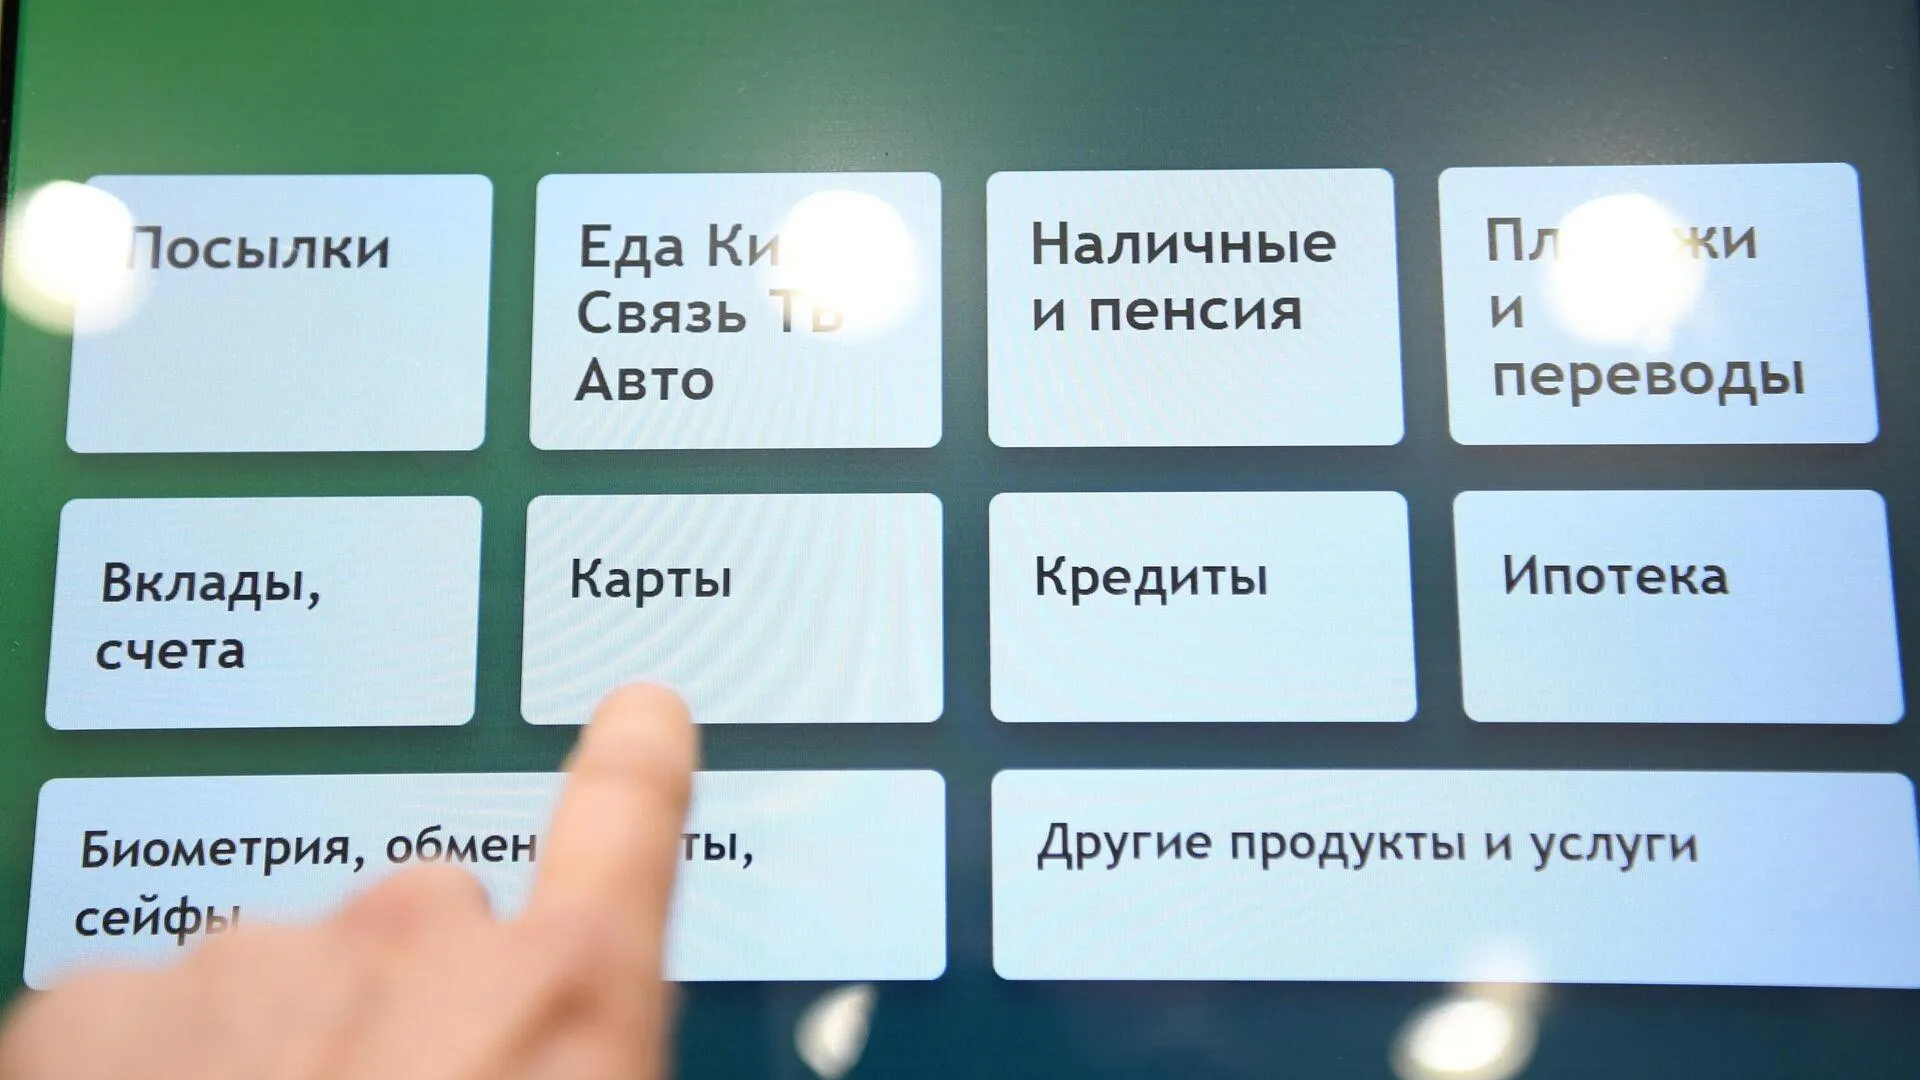 Появилась новая версия приложения «Учет онлайн» от Сбербанка для iOS